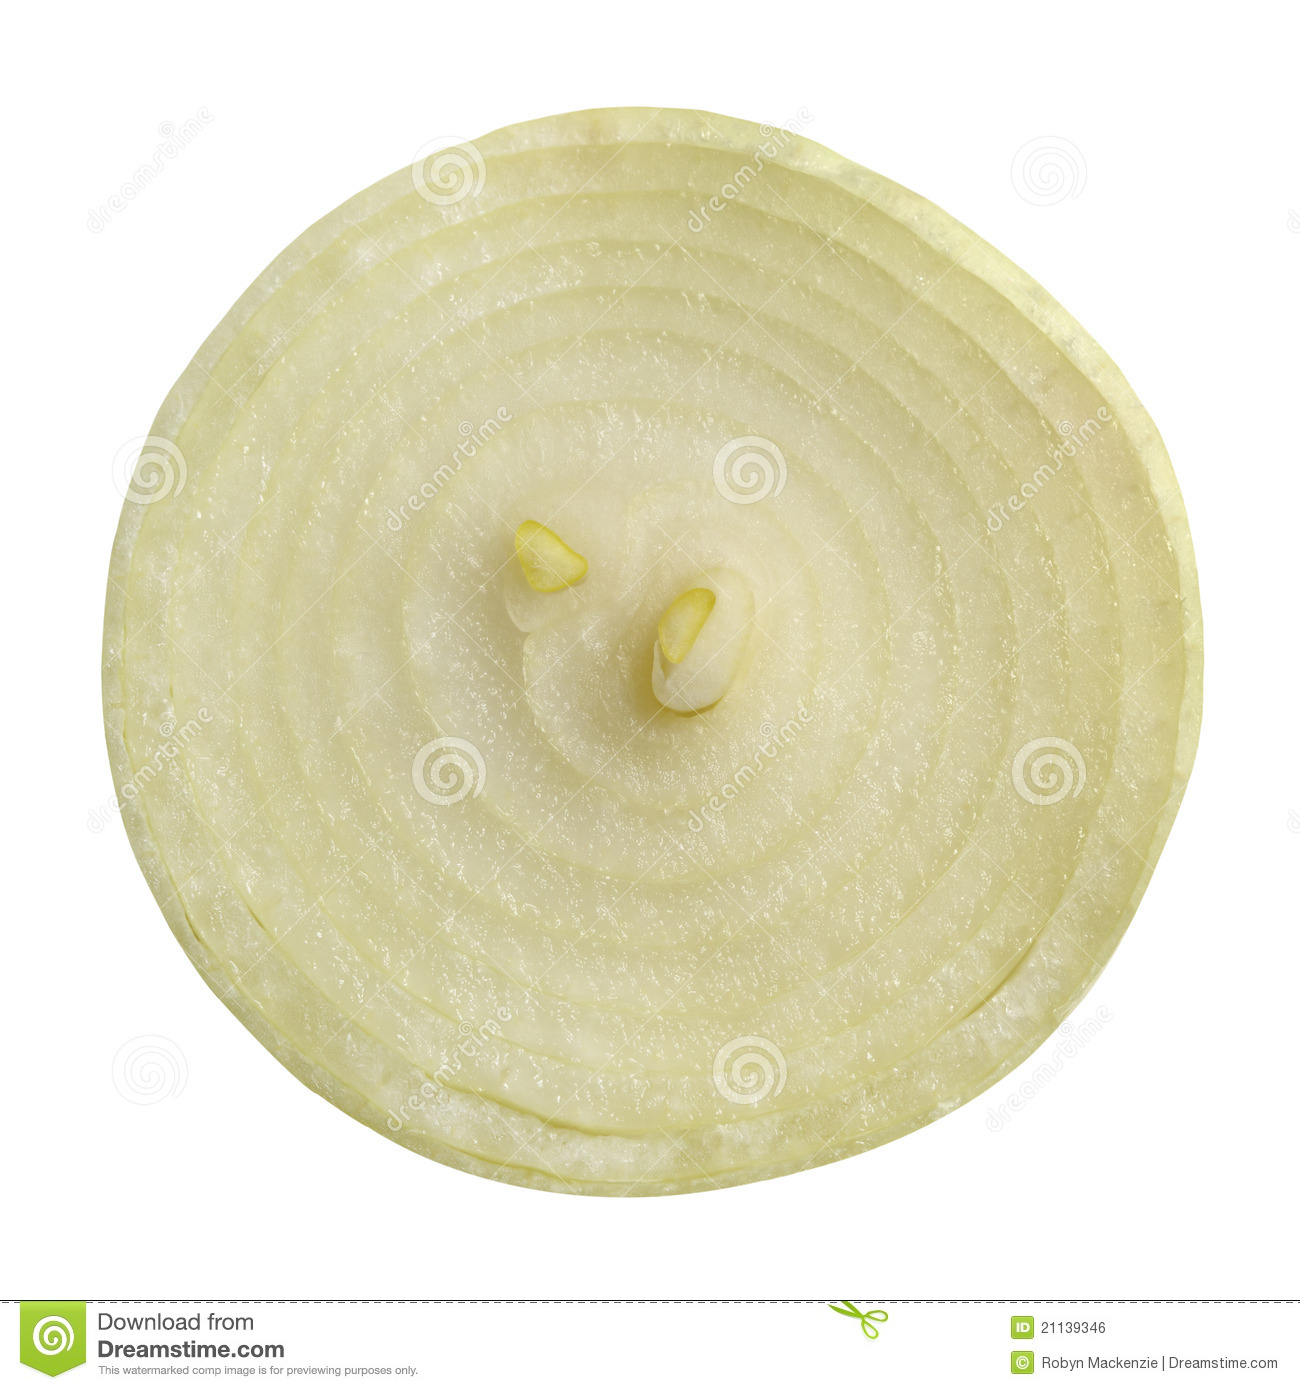 Onion Slice Royalty Free Stock Image   Image  21139346